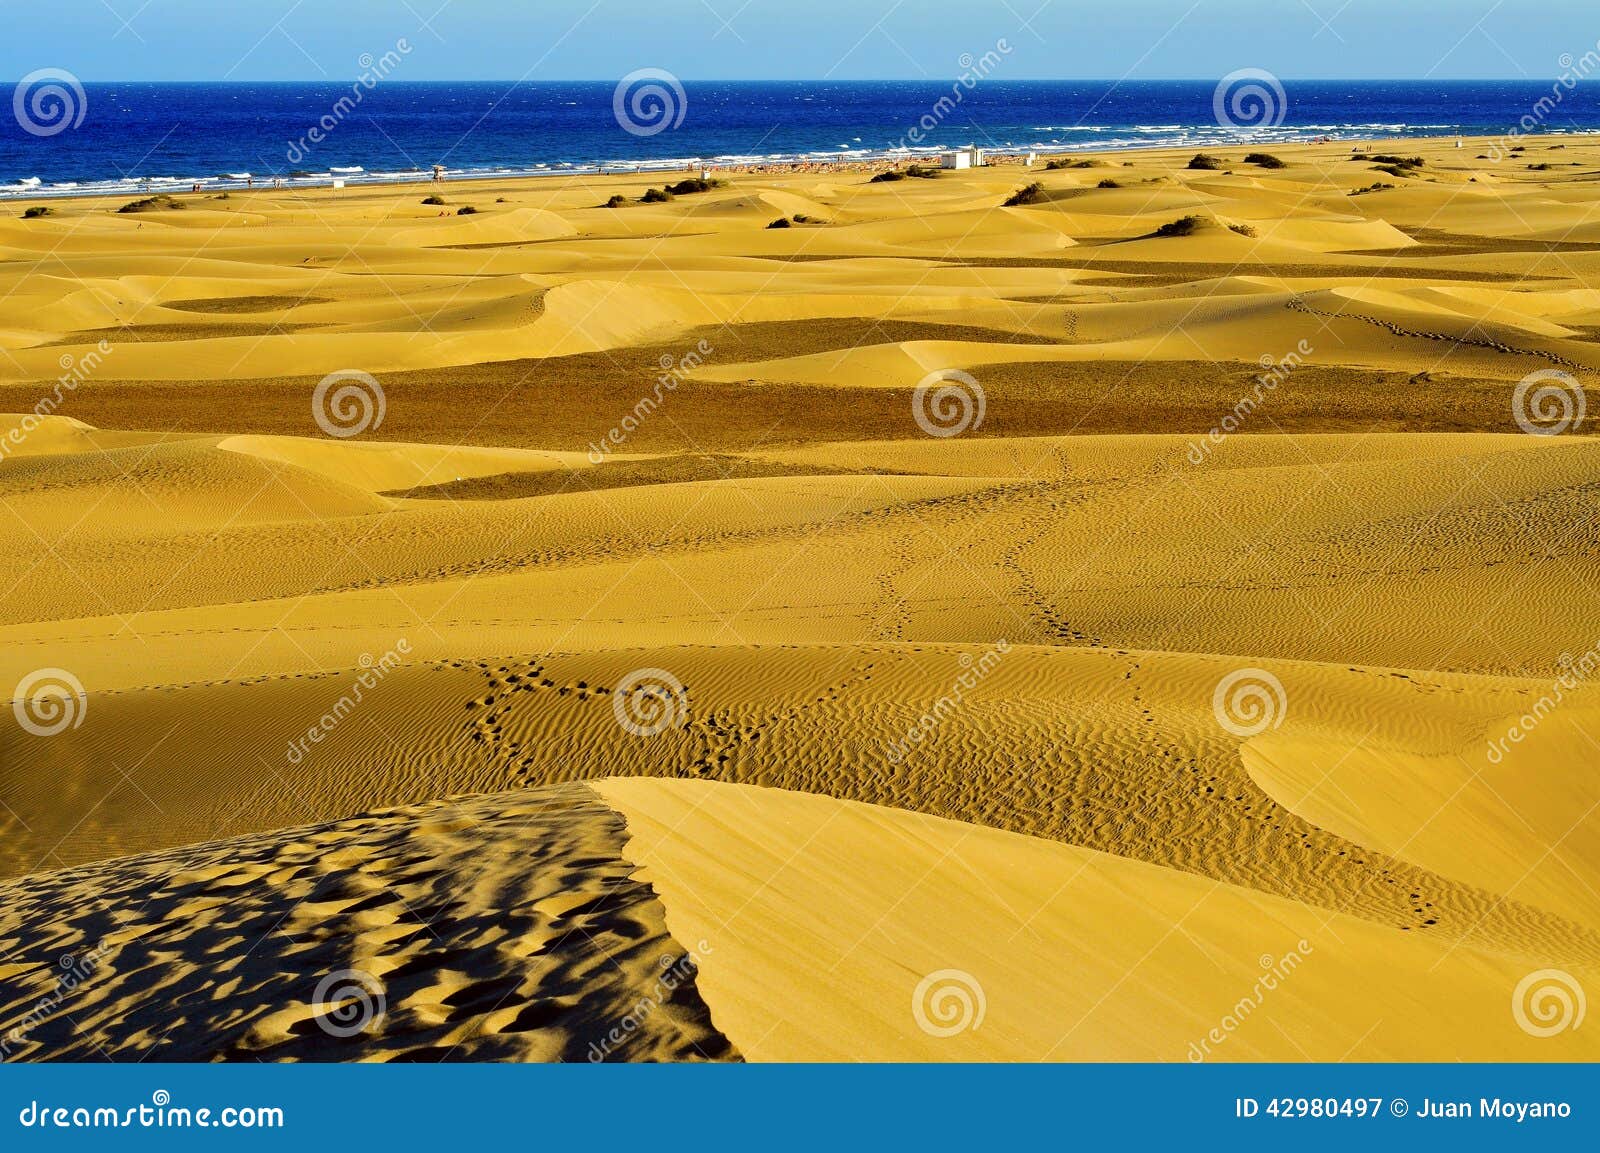 natural reserve of dunes of maspalomas, in gran ca